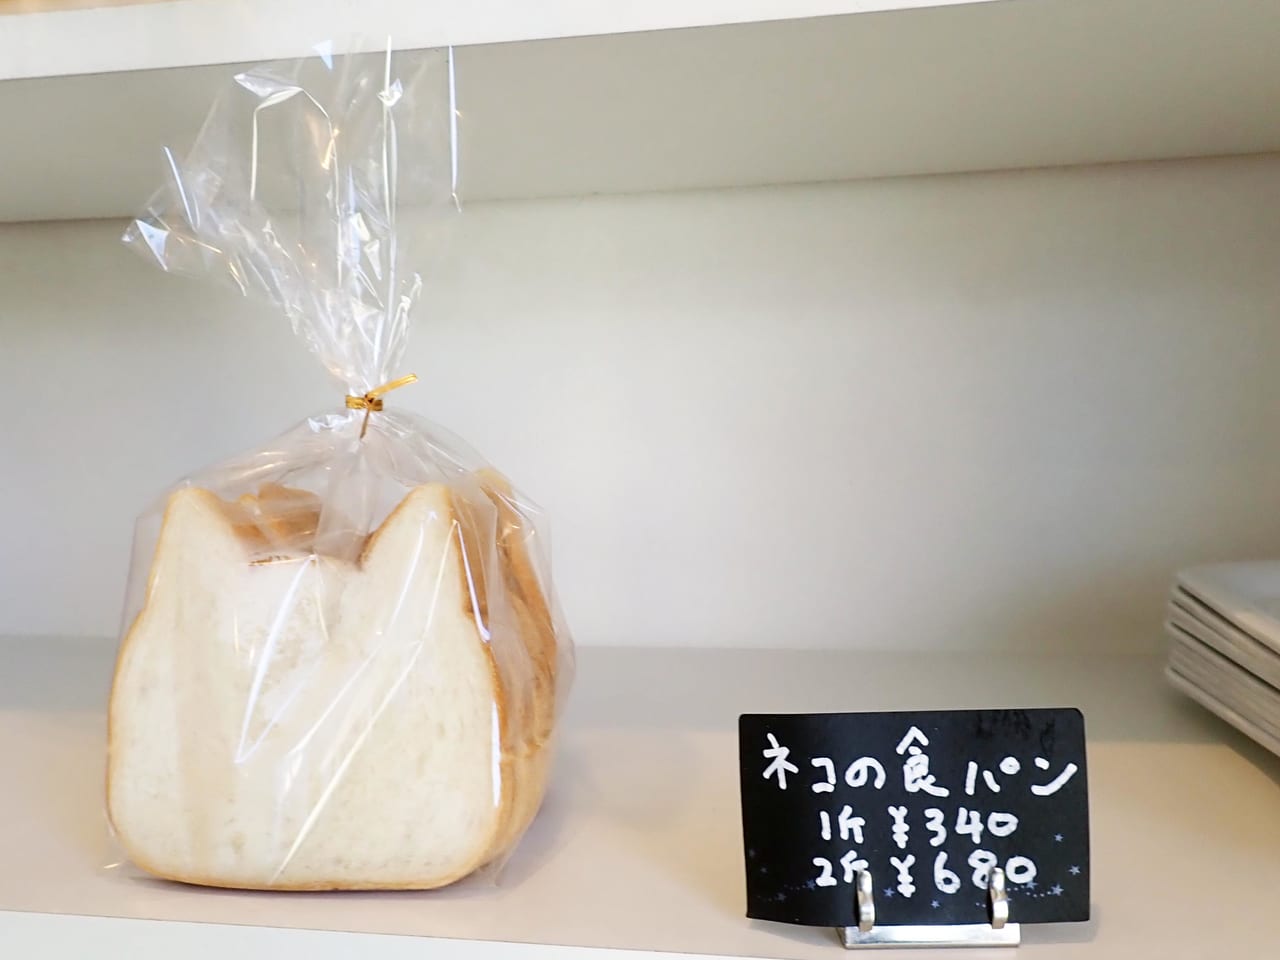 川越の美味しいパン屋さん『スピカ』